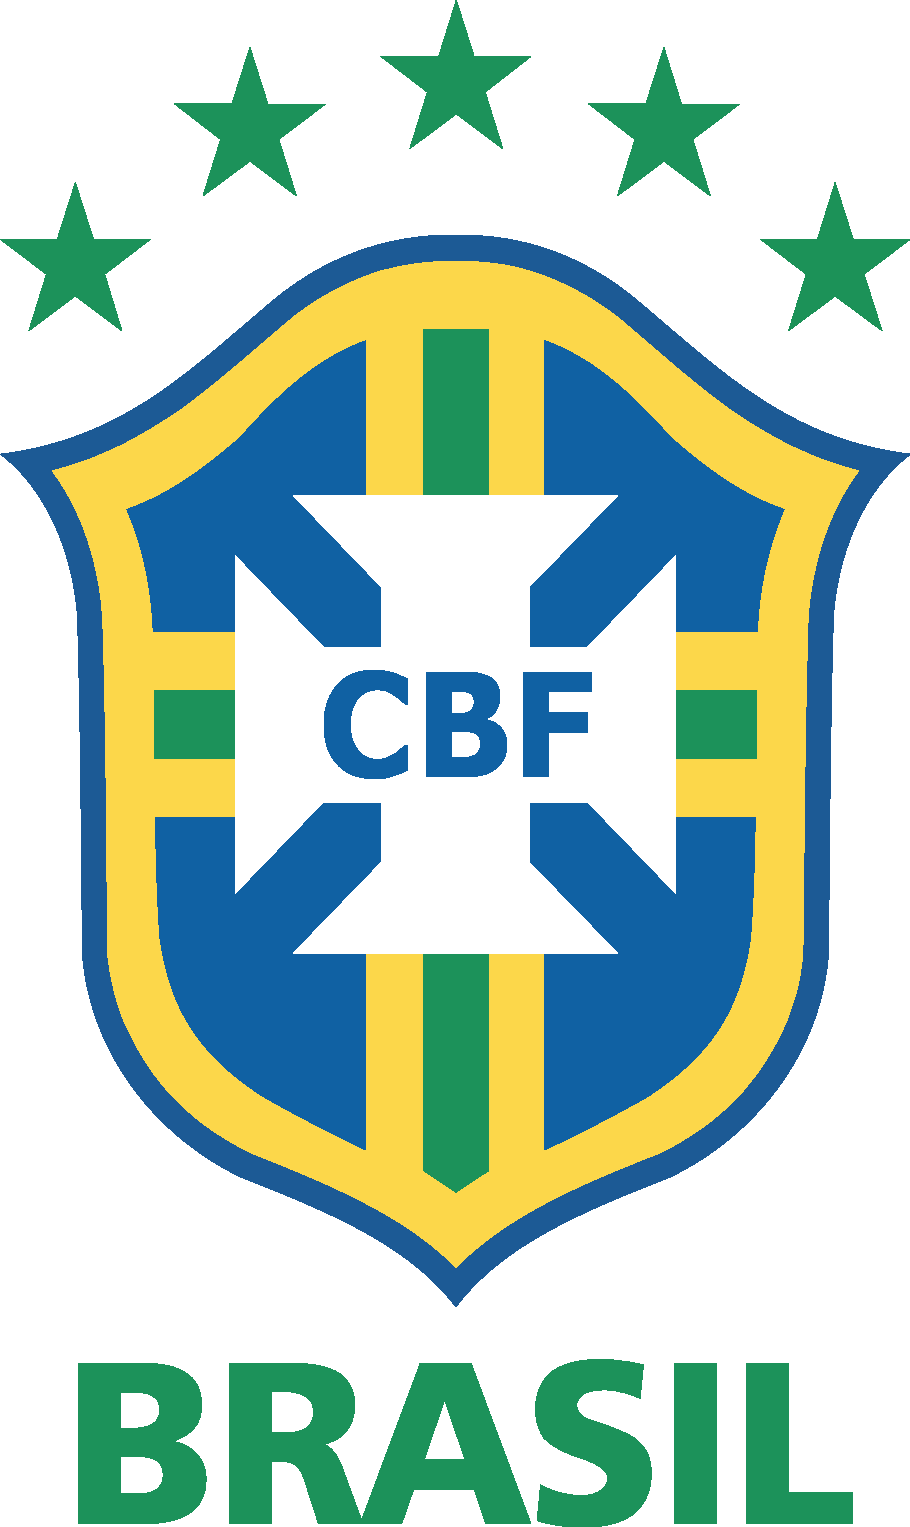 Brazilian Football Confederation & Brazil National Football Team Logo [cbf.com.br]